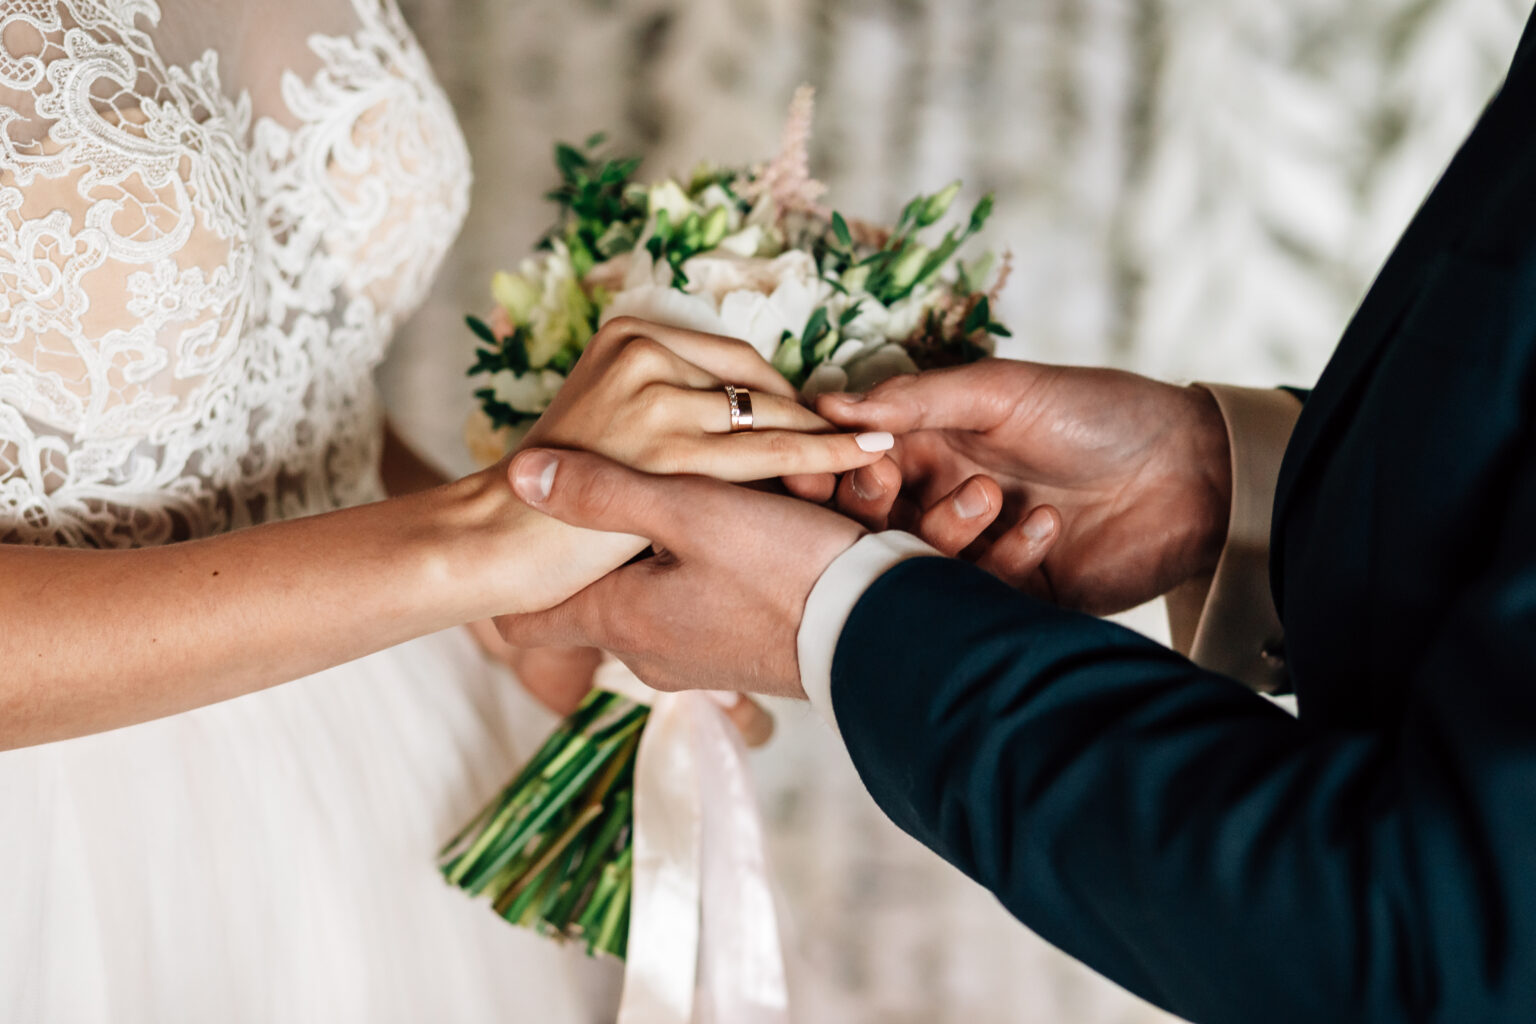 4 год замужества. Жених и невеста. Бракосочетание. Кольца жениха и невесты. Обручальные кольца жених и невеста.